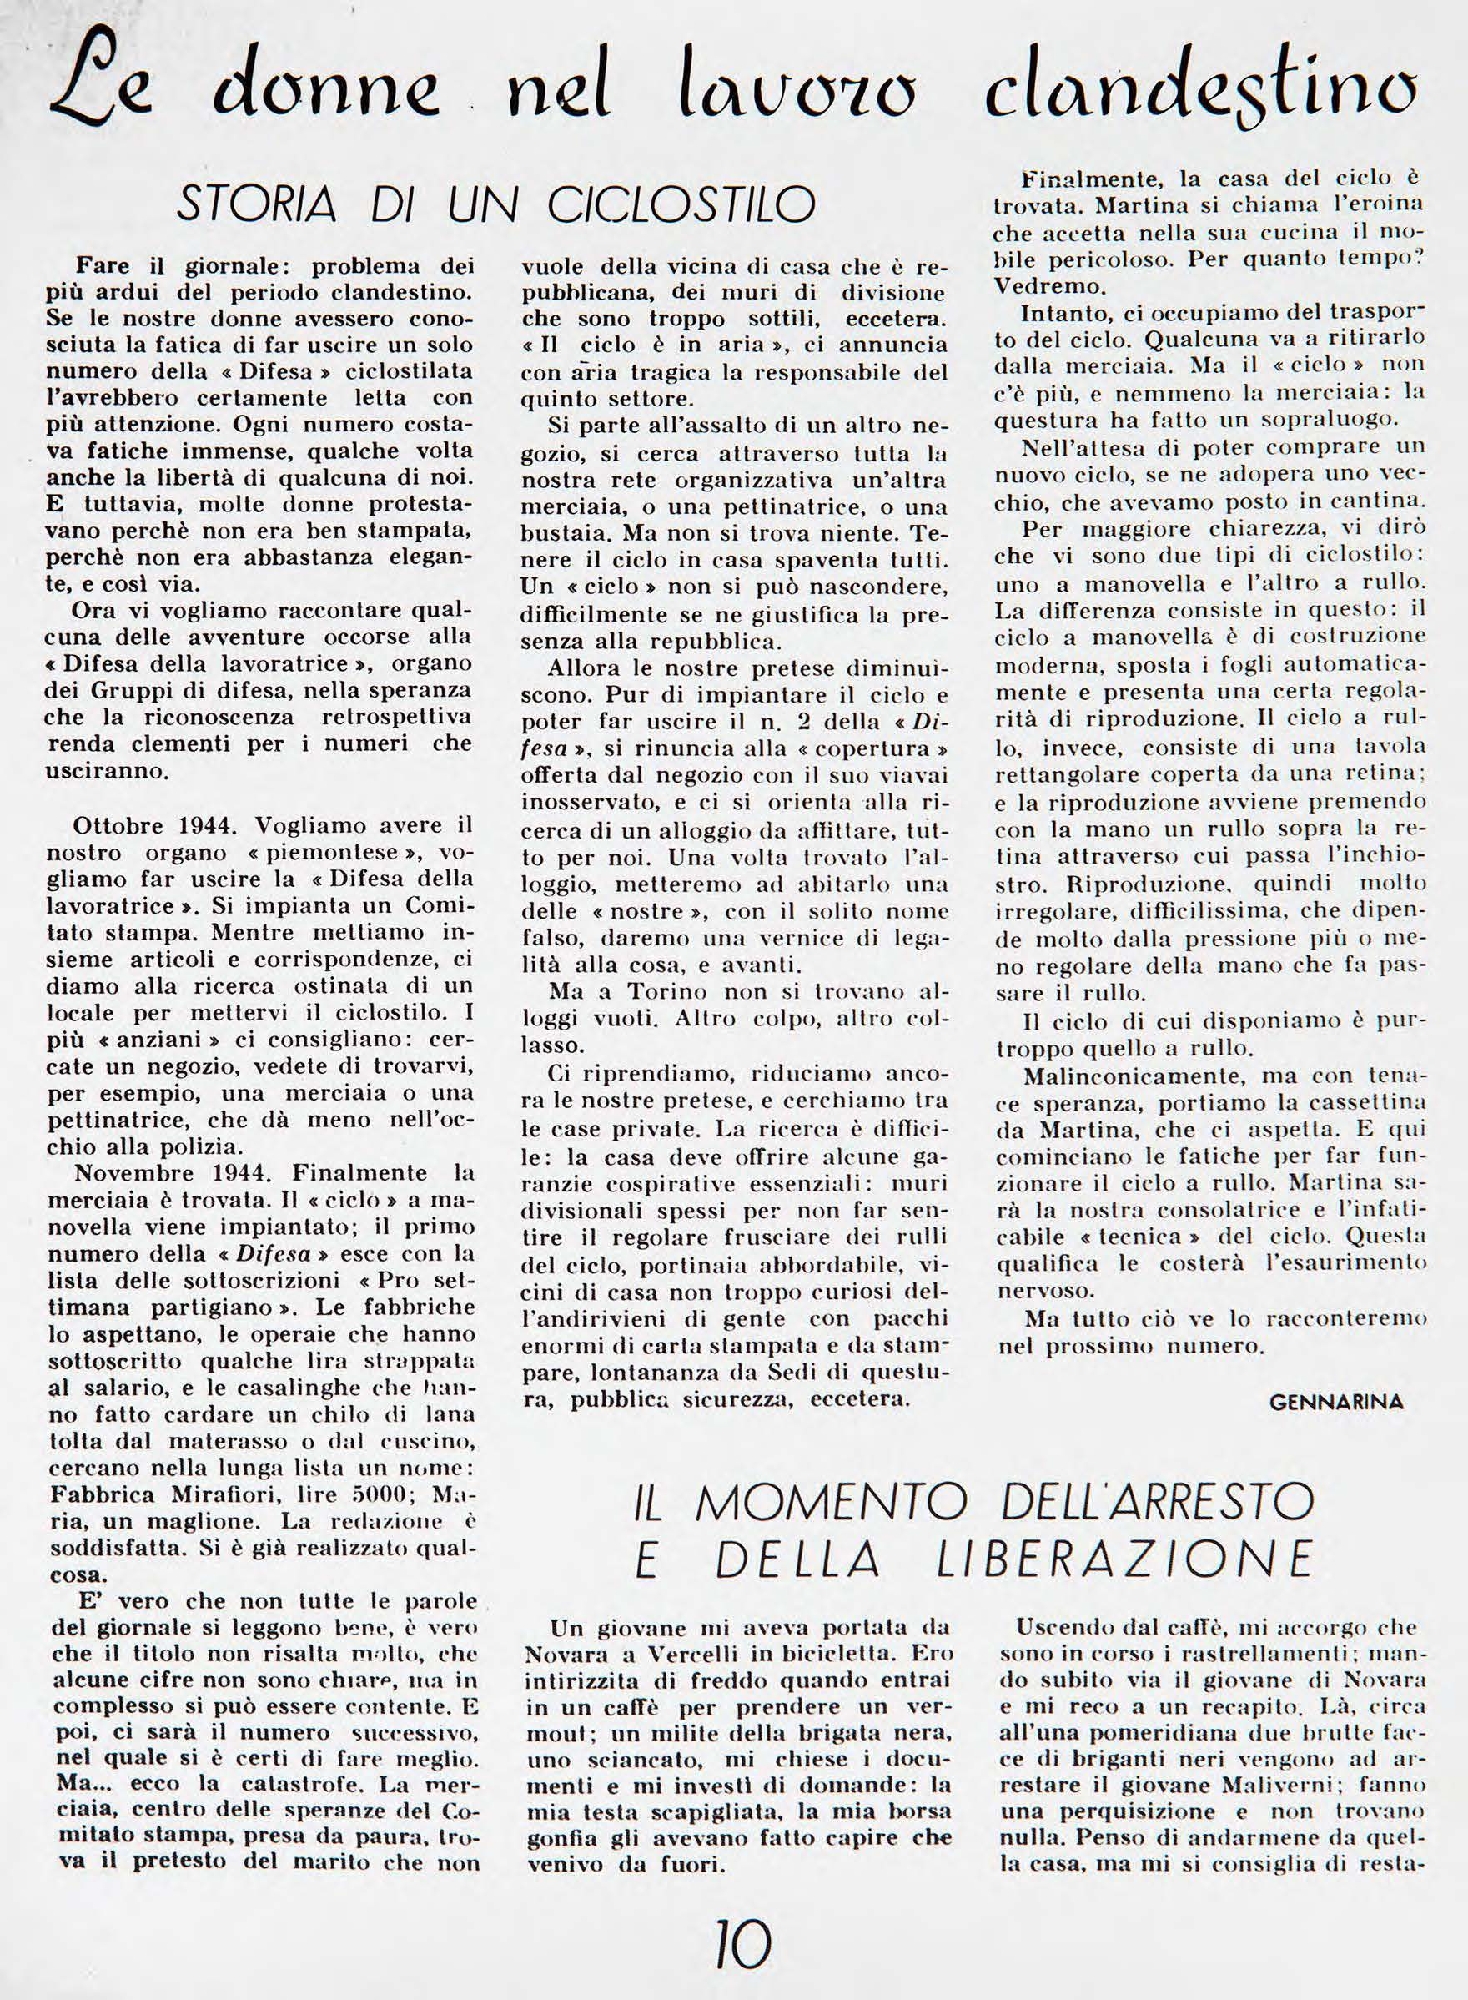 Foto: Piemonte, primo numero ufficiale